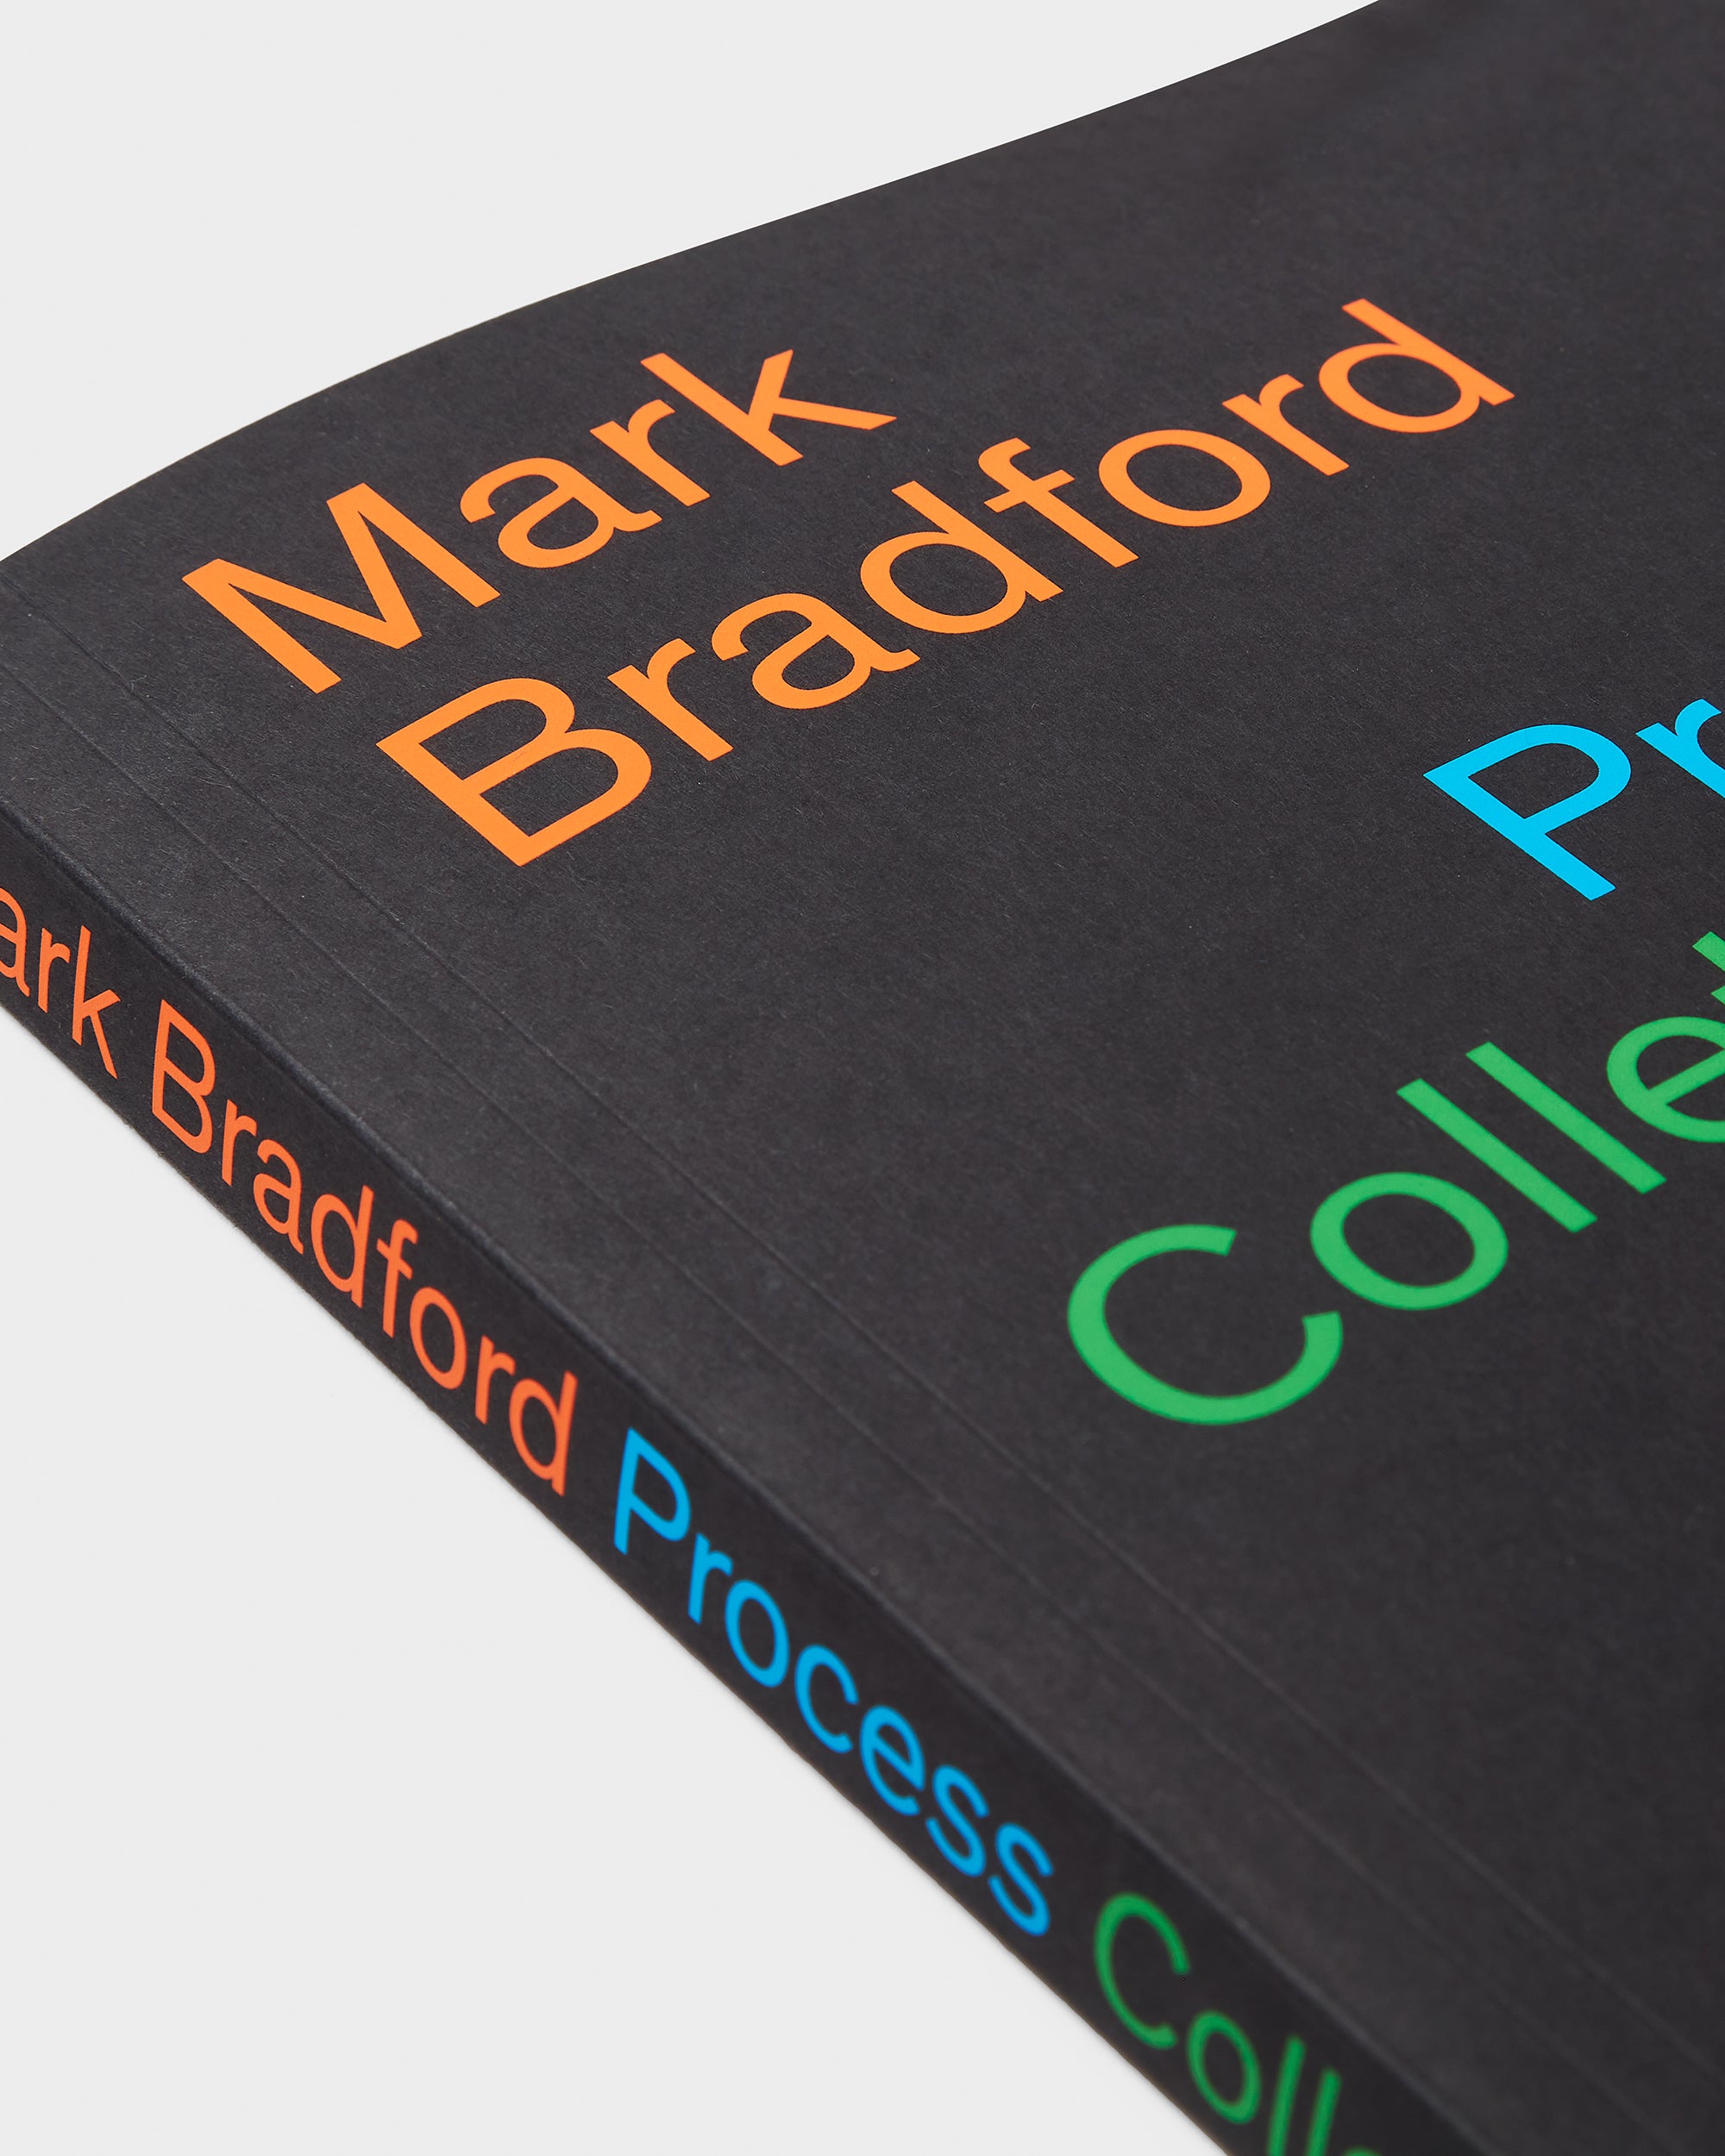 Mark Bradford: Process Collettivo